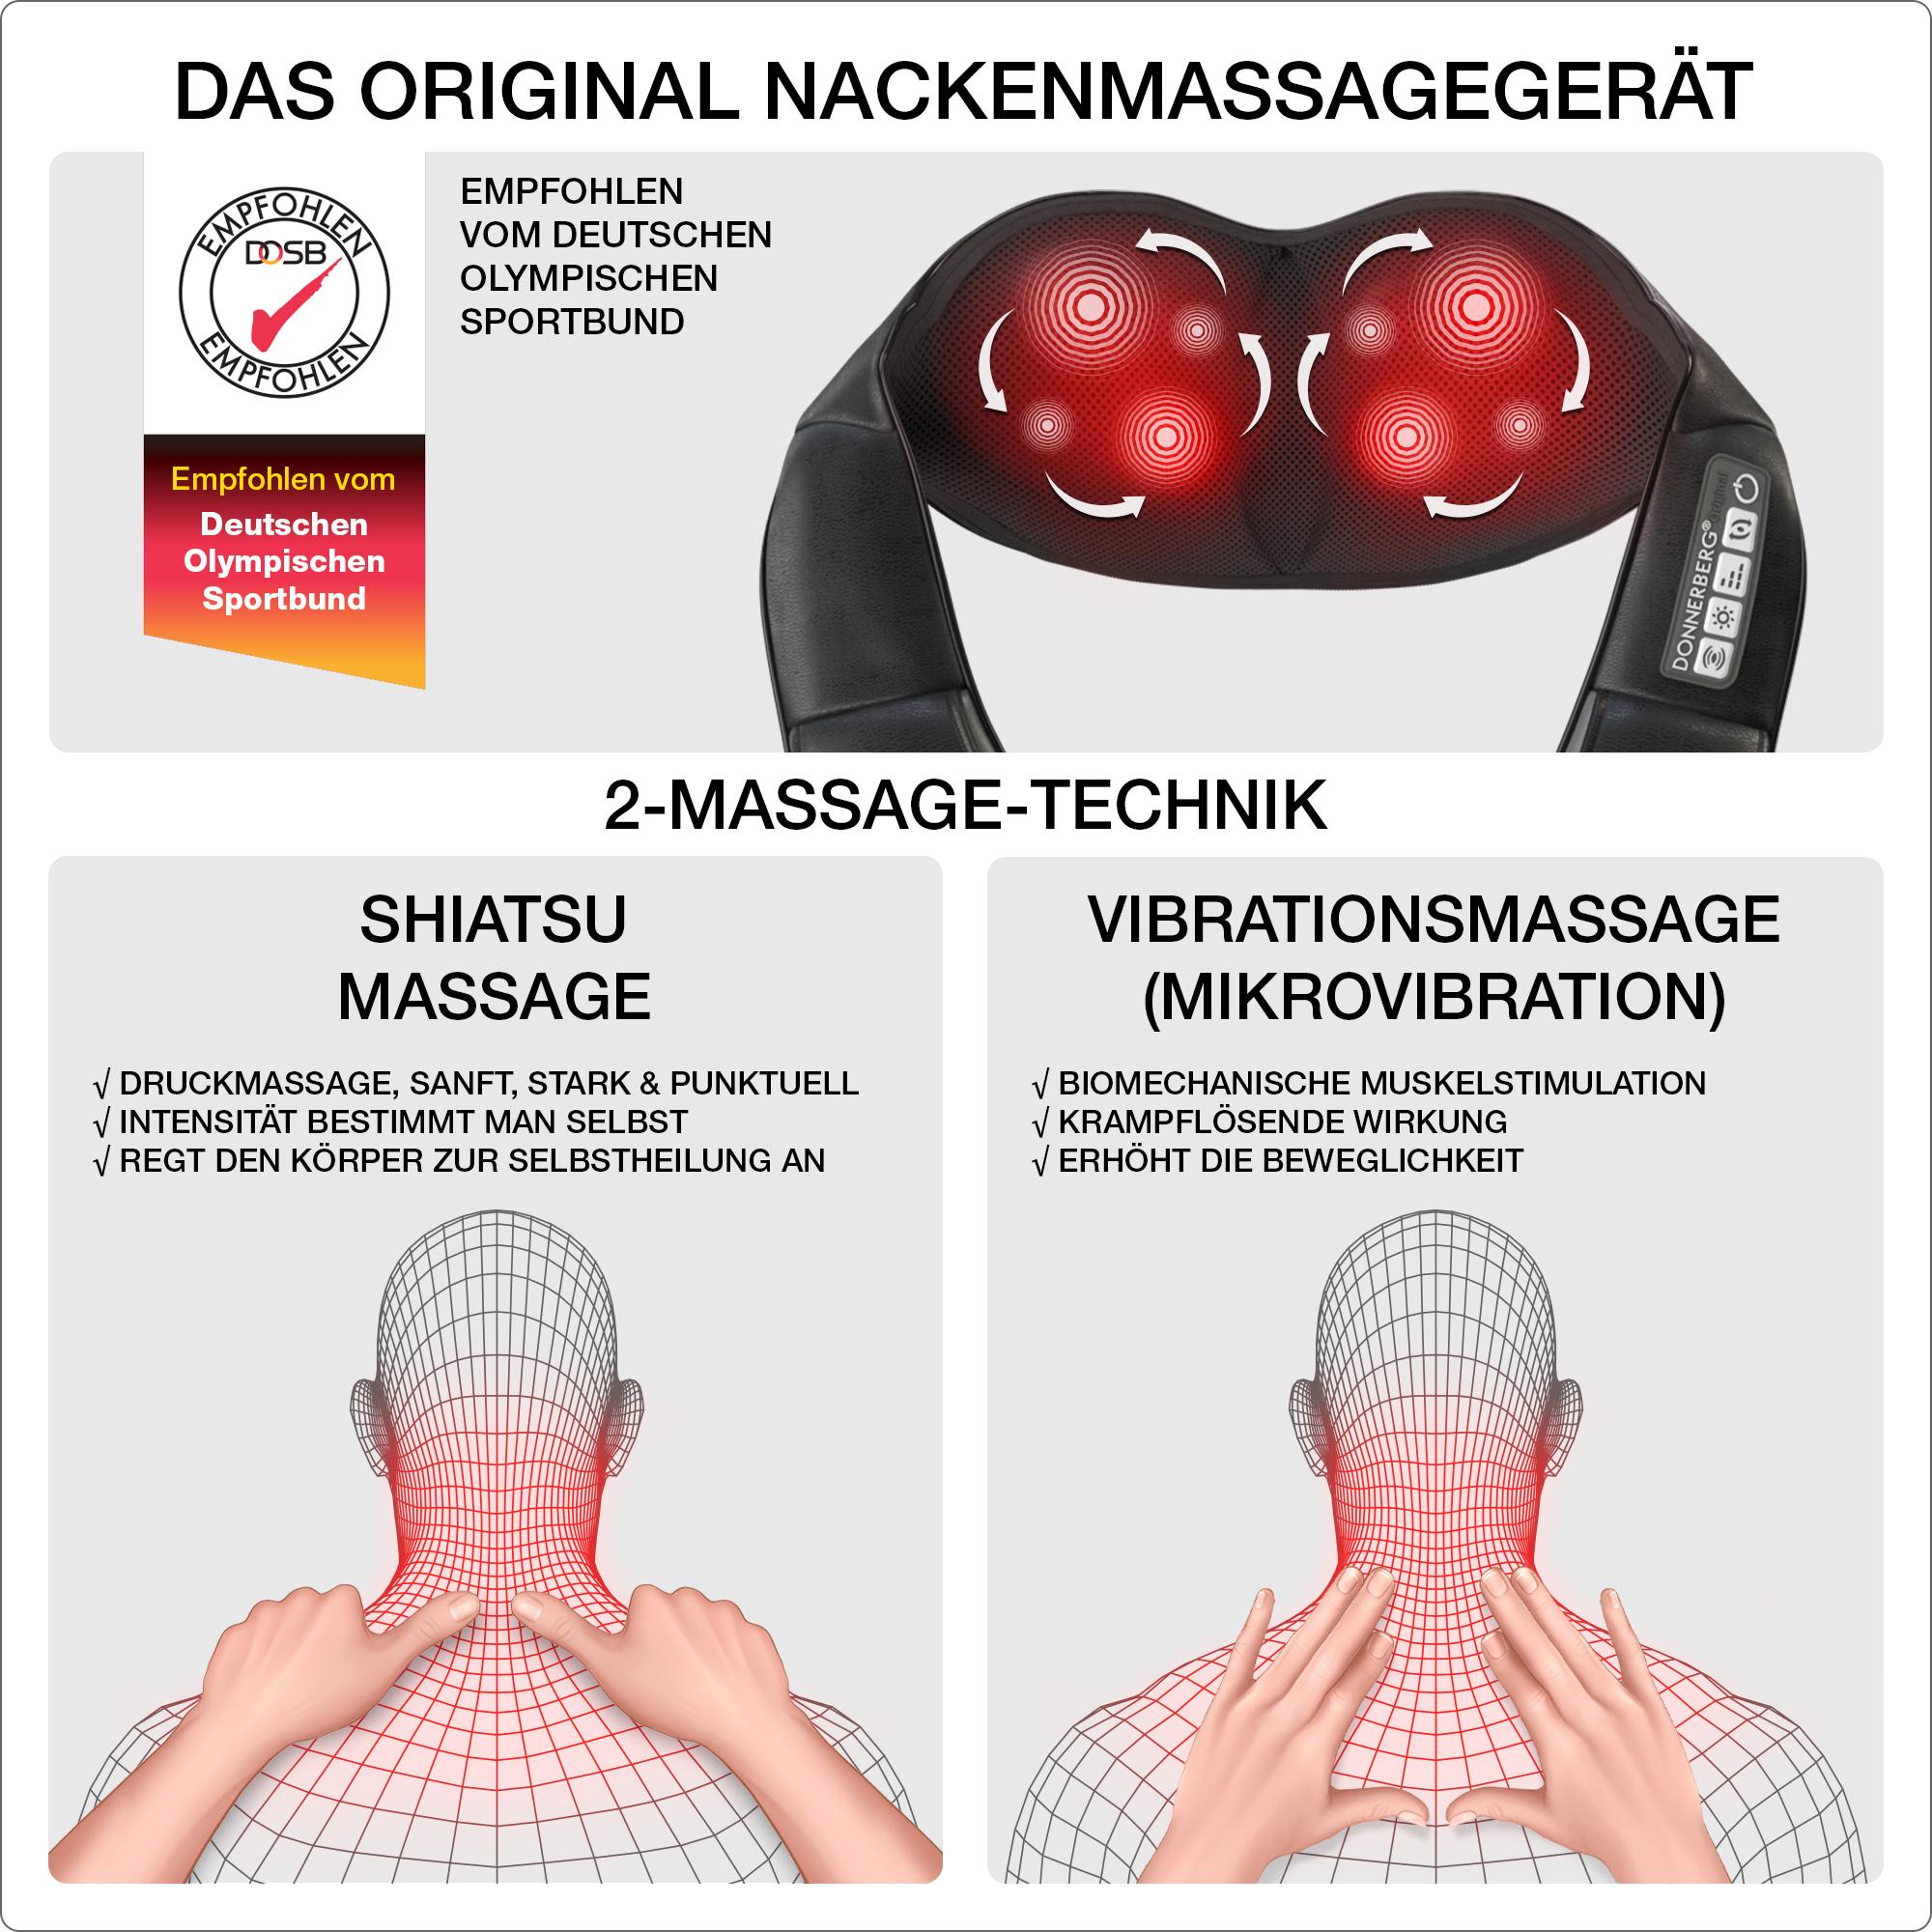 Nackenmassagegerät Massage 4D ORIGINAL DAS Massagegerät Shiatsu DONNERBERG